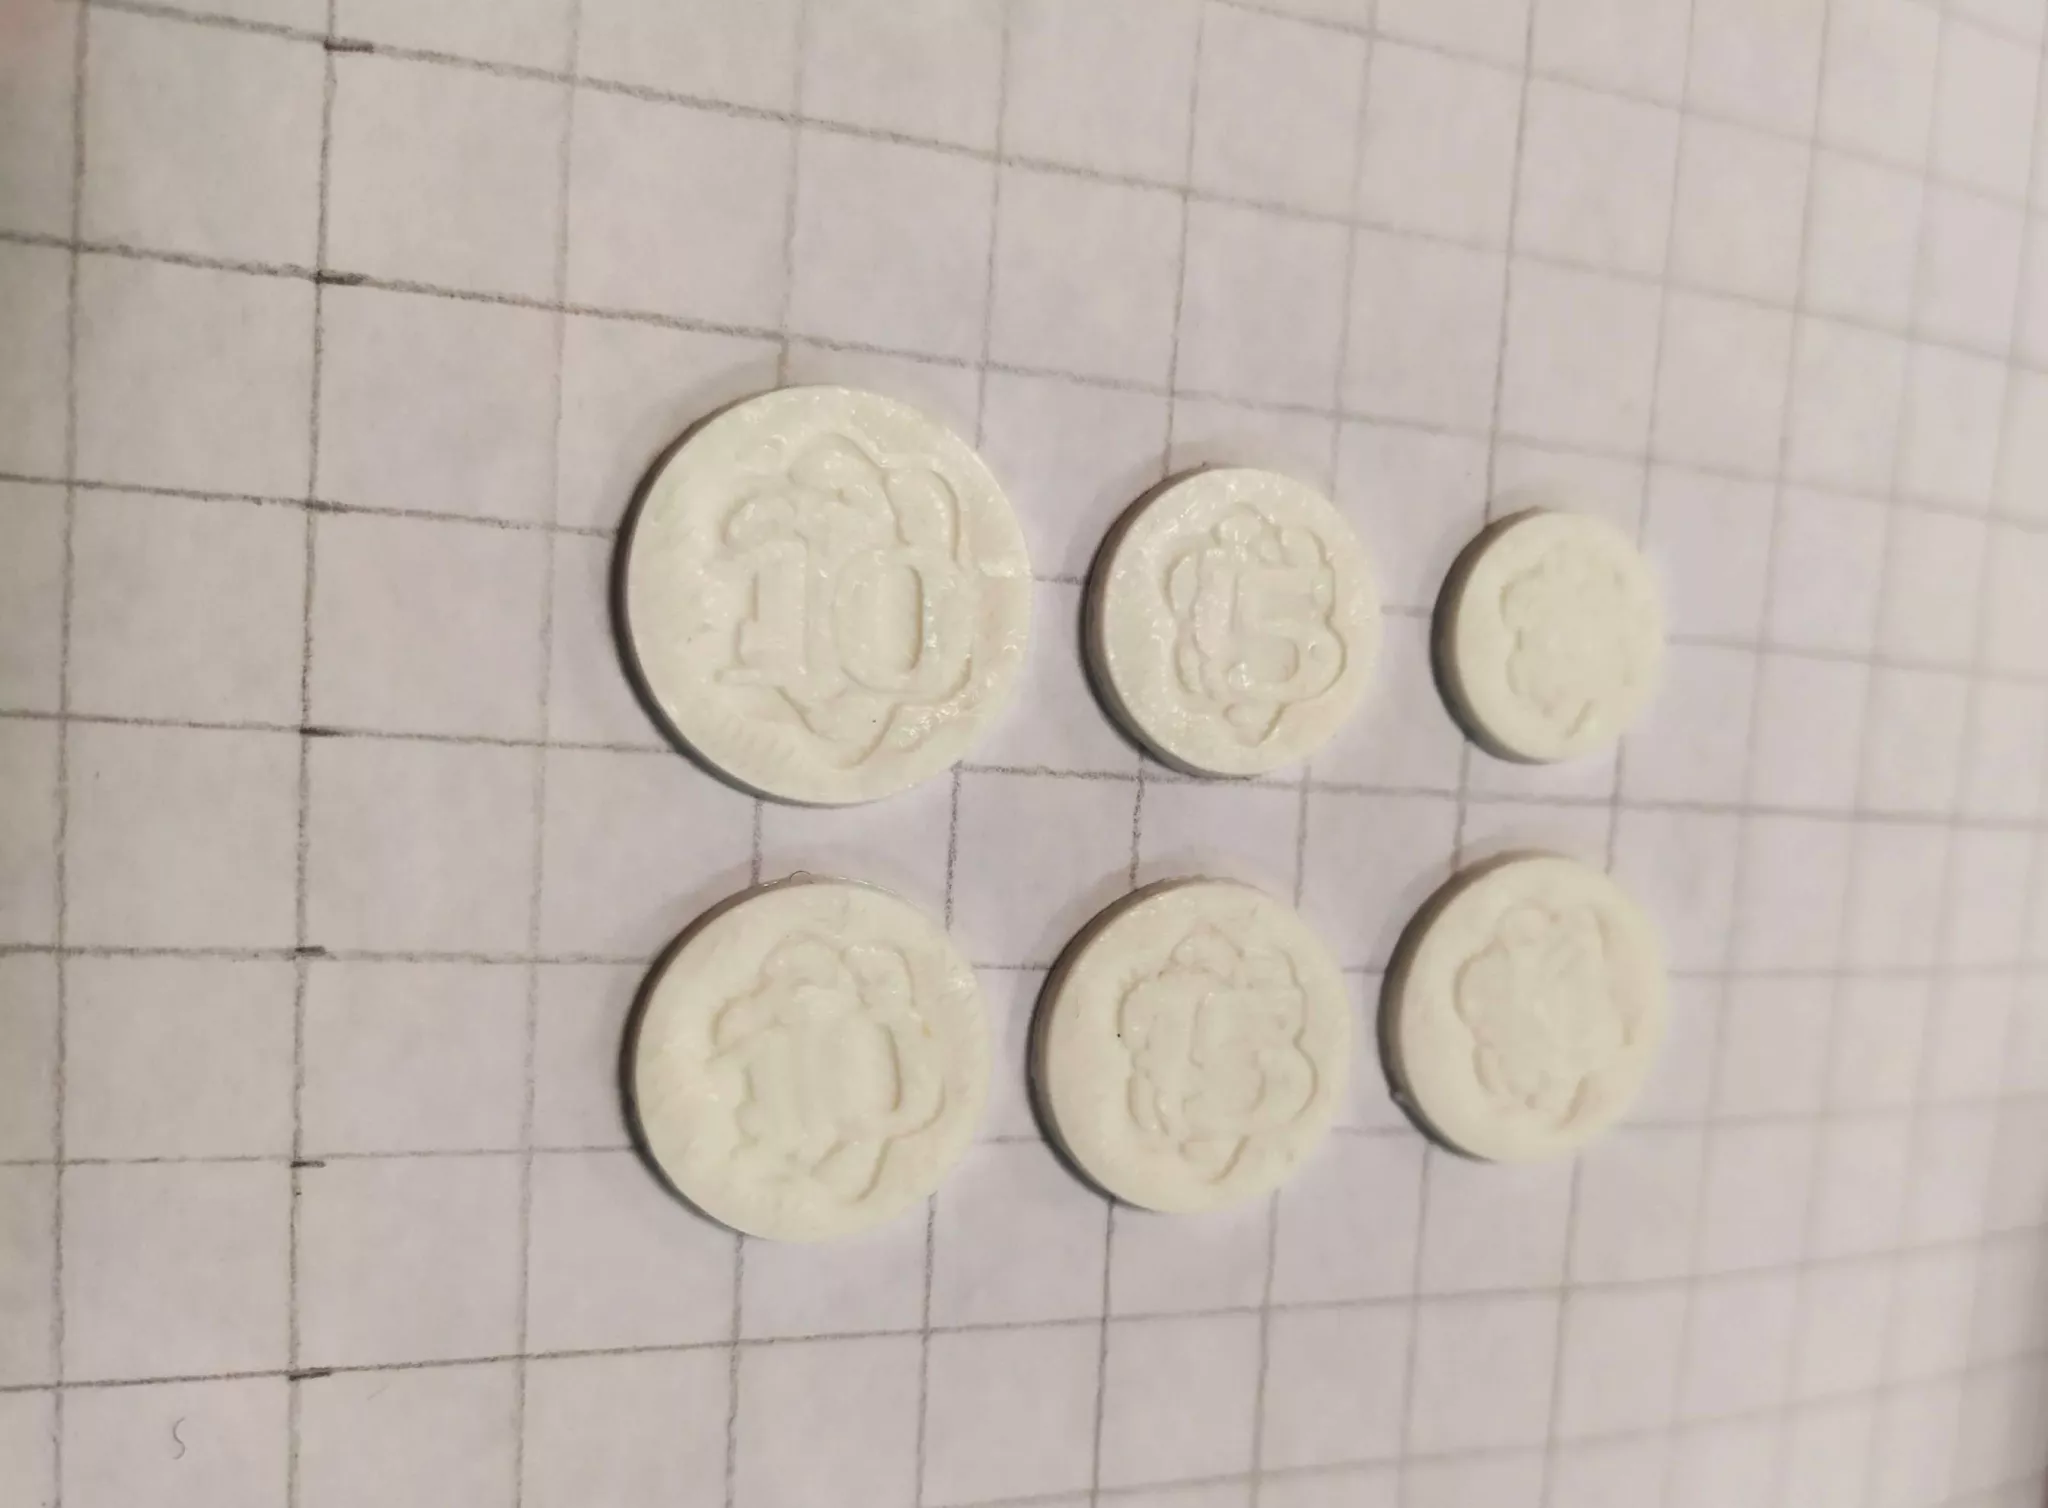 Des pièces de "monnaie" en plastique imprimées en 3D. Les détails sont indistincts mais on devine un motif et les chiffres "10" et "5".